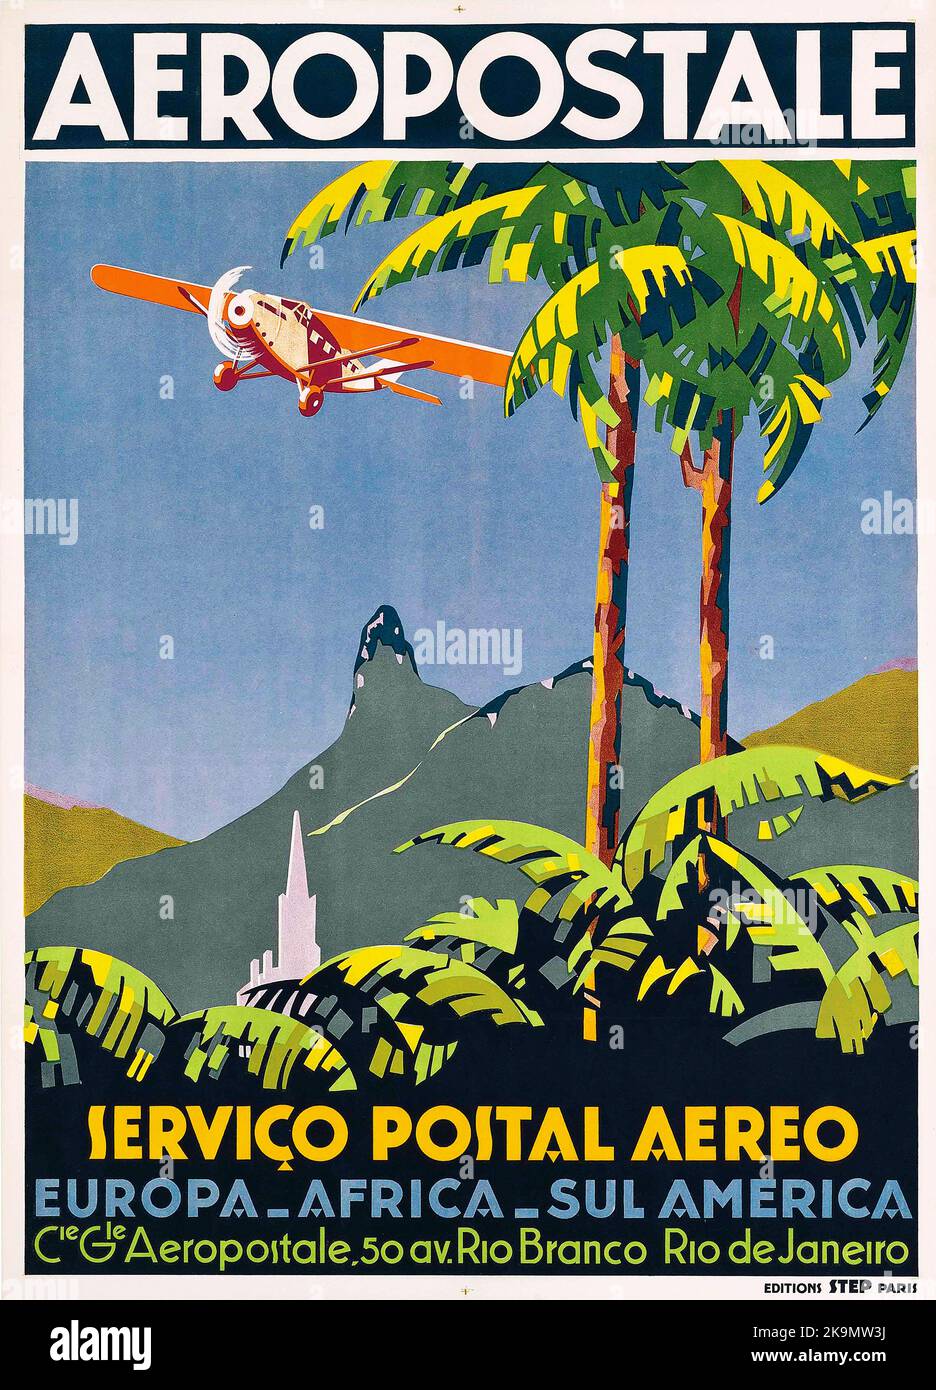 Vintage 1920s travel poster - AEROPOSTALE, RIO DE JANEIRO, Servico Postal Aero. South America Stock Photo